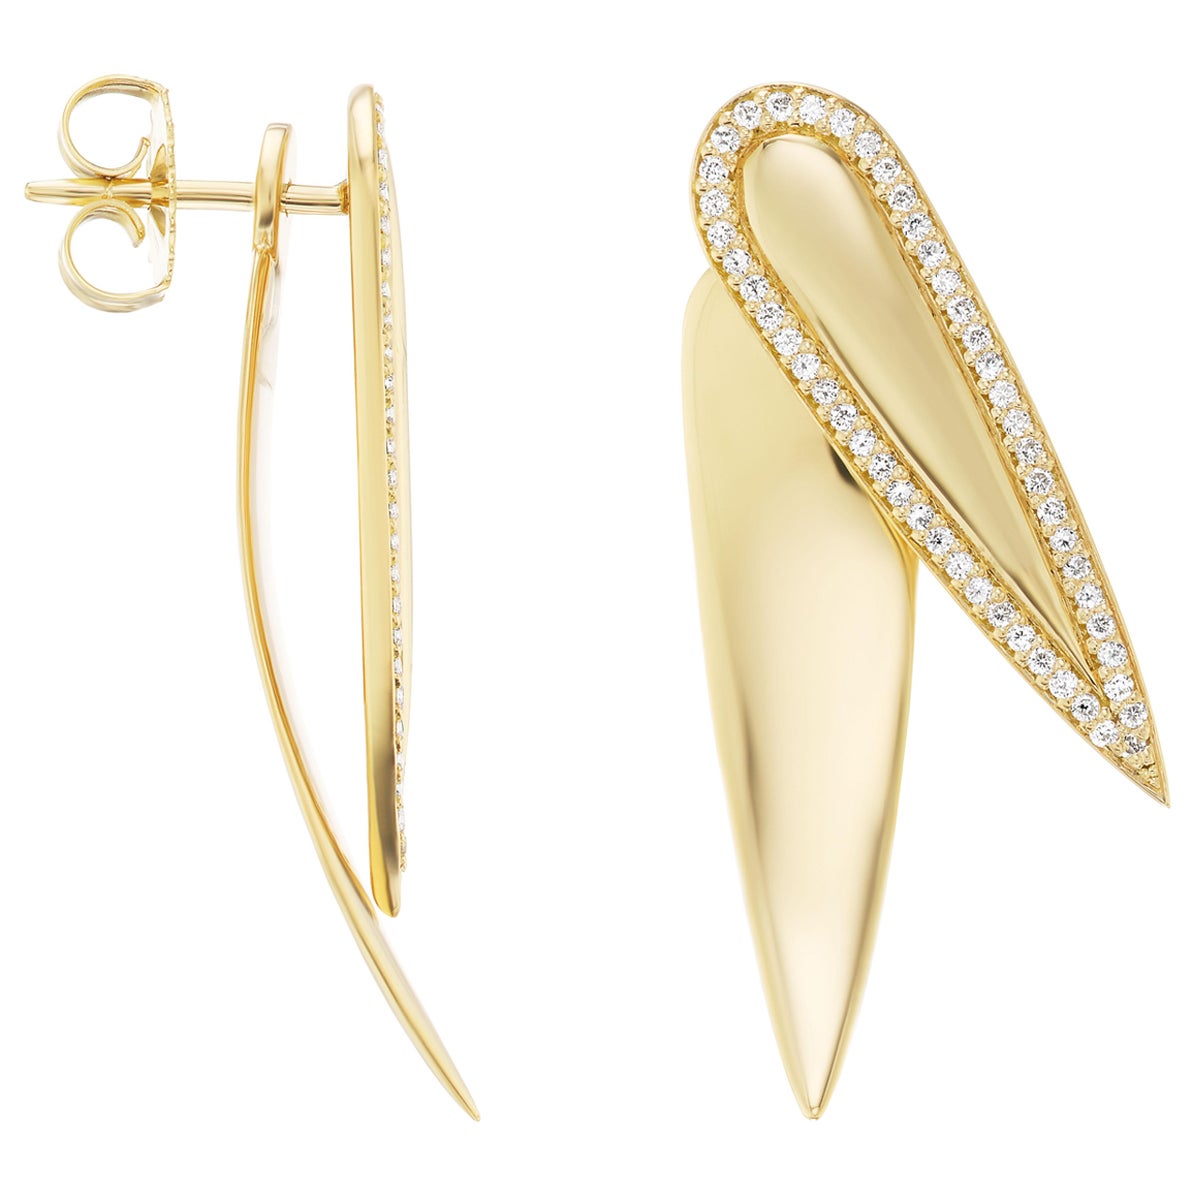 18k Gold Engravable Diamond Nifo Stud and Jacket Earrings